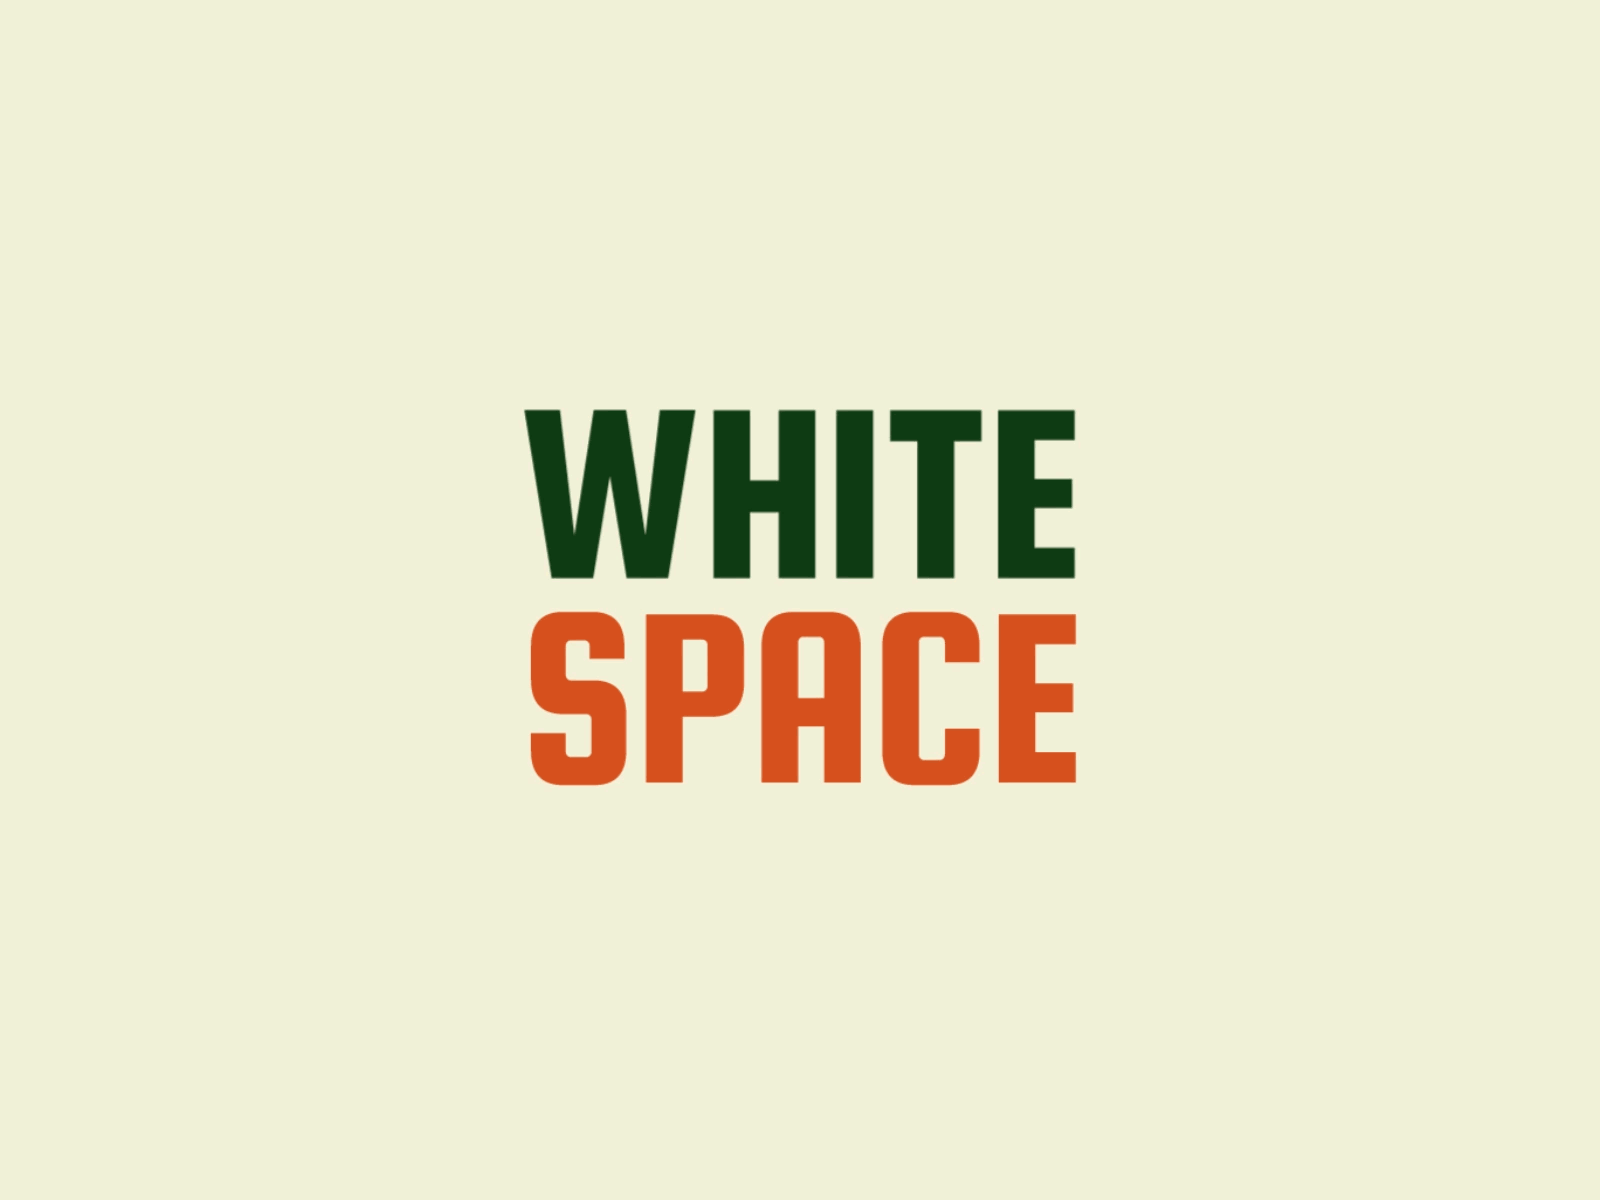 graphic design white space